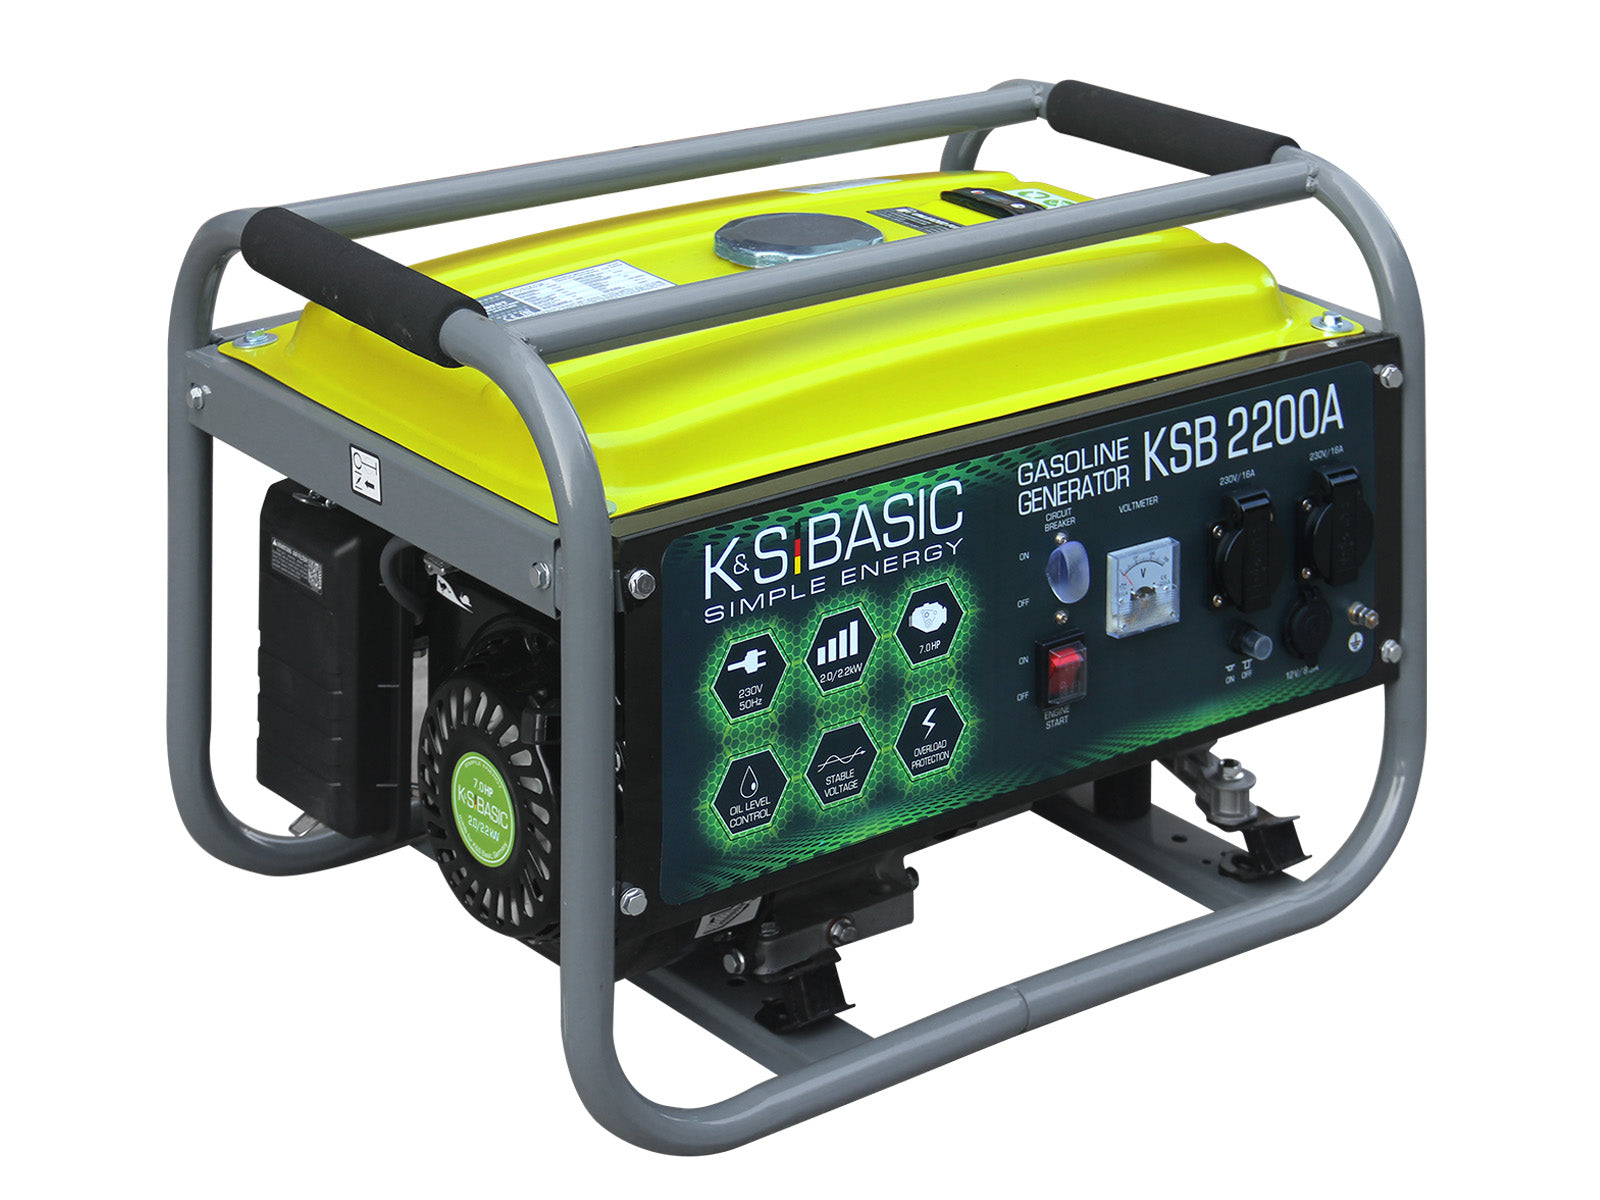 Generador de gasolina KSB 2200A